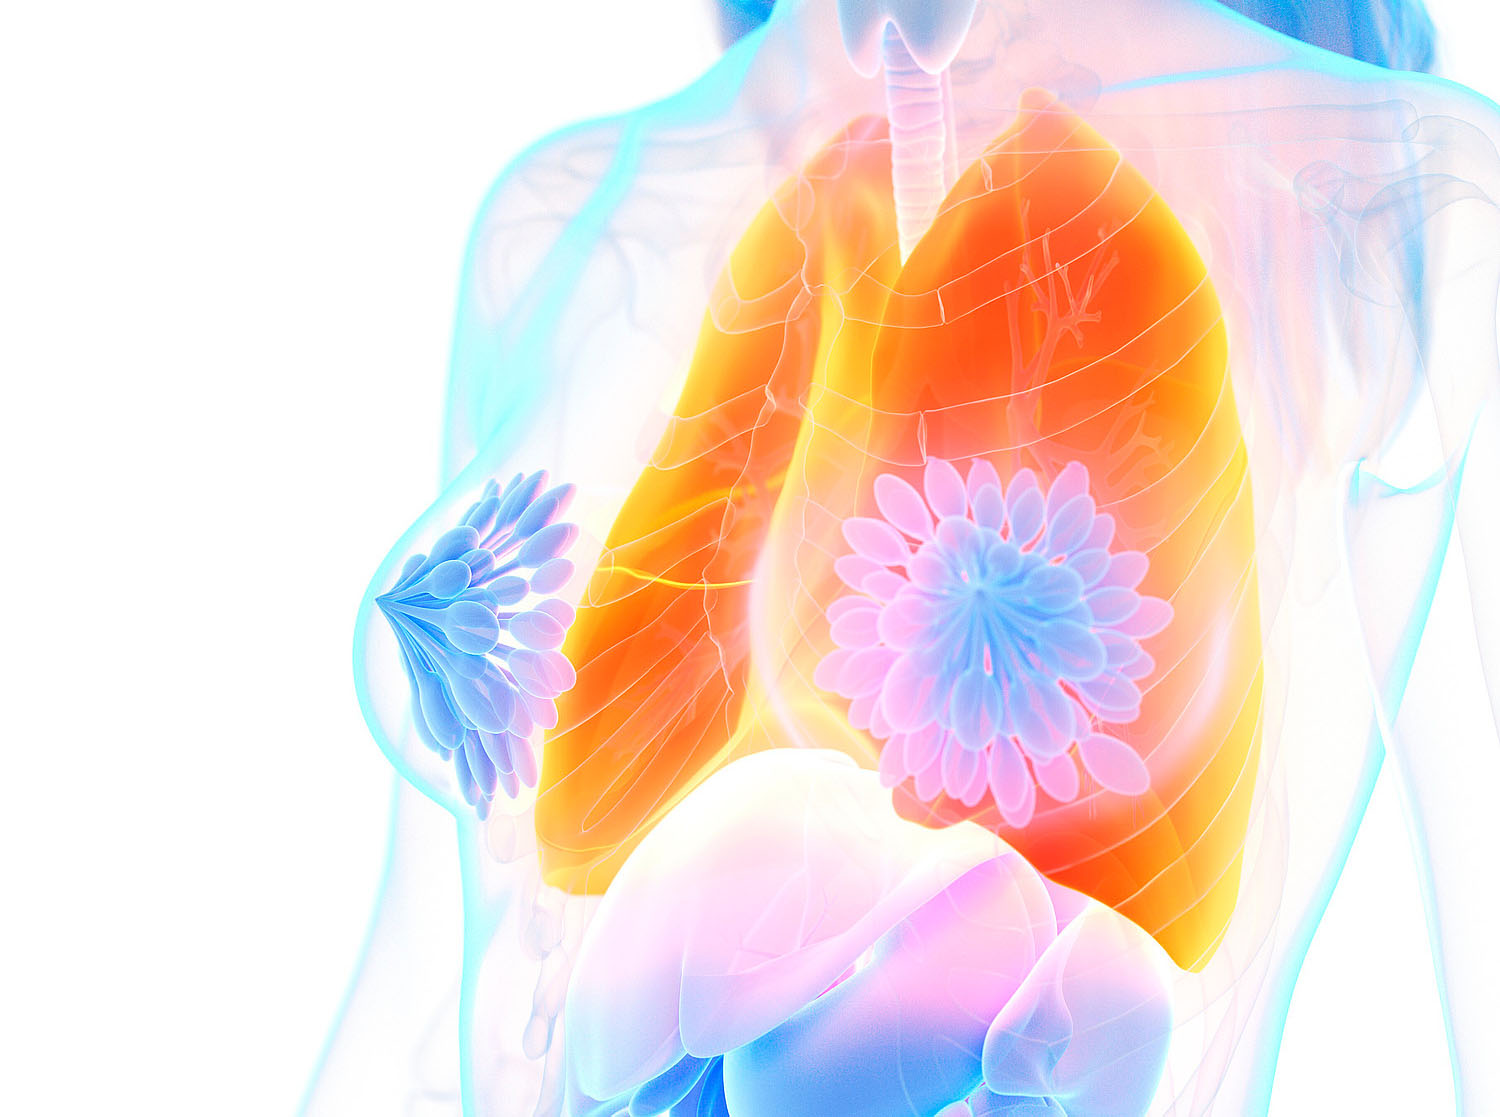 Frauen mit Asthma klagen häufiger über Giemen und Husten, betroffene Männer berichten öfter über verstärkte nächtliche Symptomatik: Auch bei der Behandlung obstruktiver Atemwegserkrankungen hilft es, geschlechtsspezifische Unterschiede zu kennen.